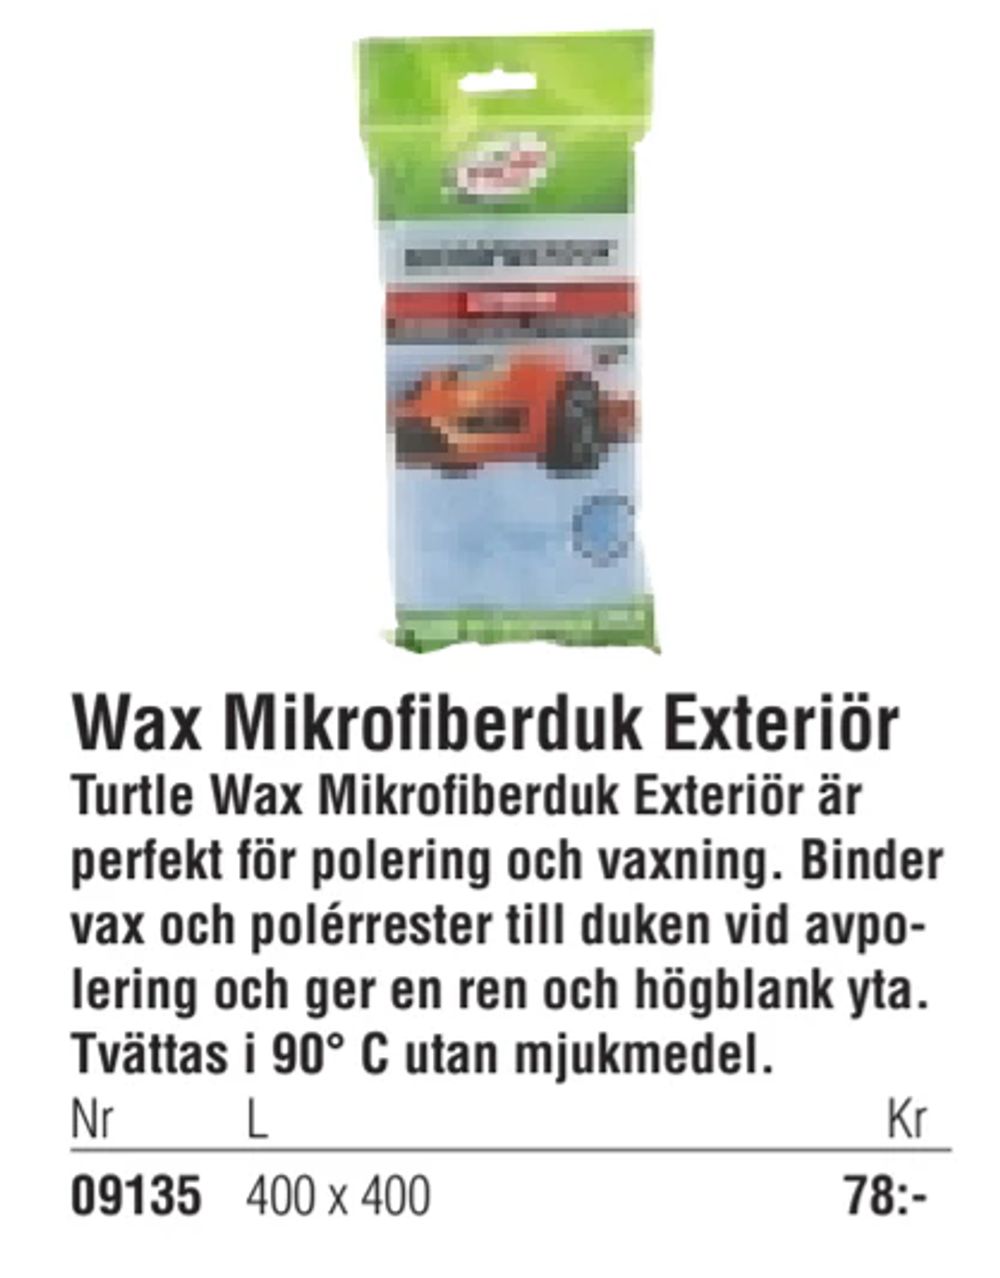 Erbjudanden på Wax Mikrofiberduk Exteriör från Erlandsons Brygga för 78 kr